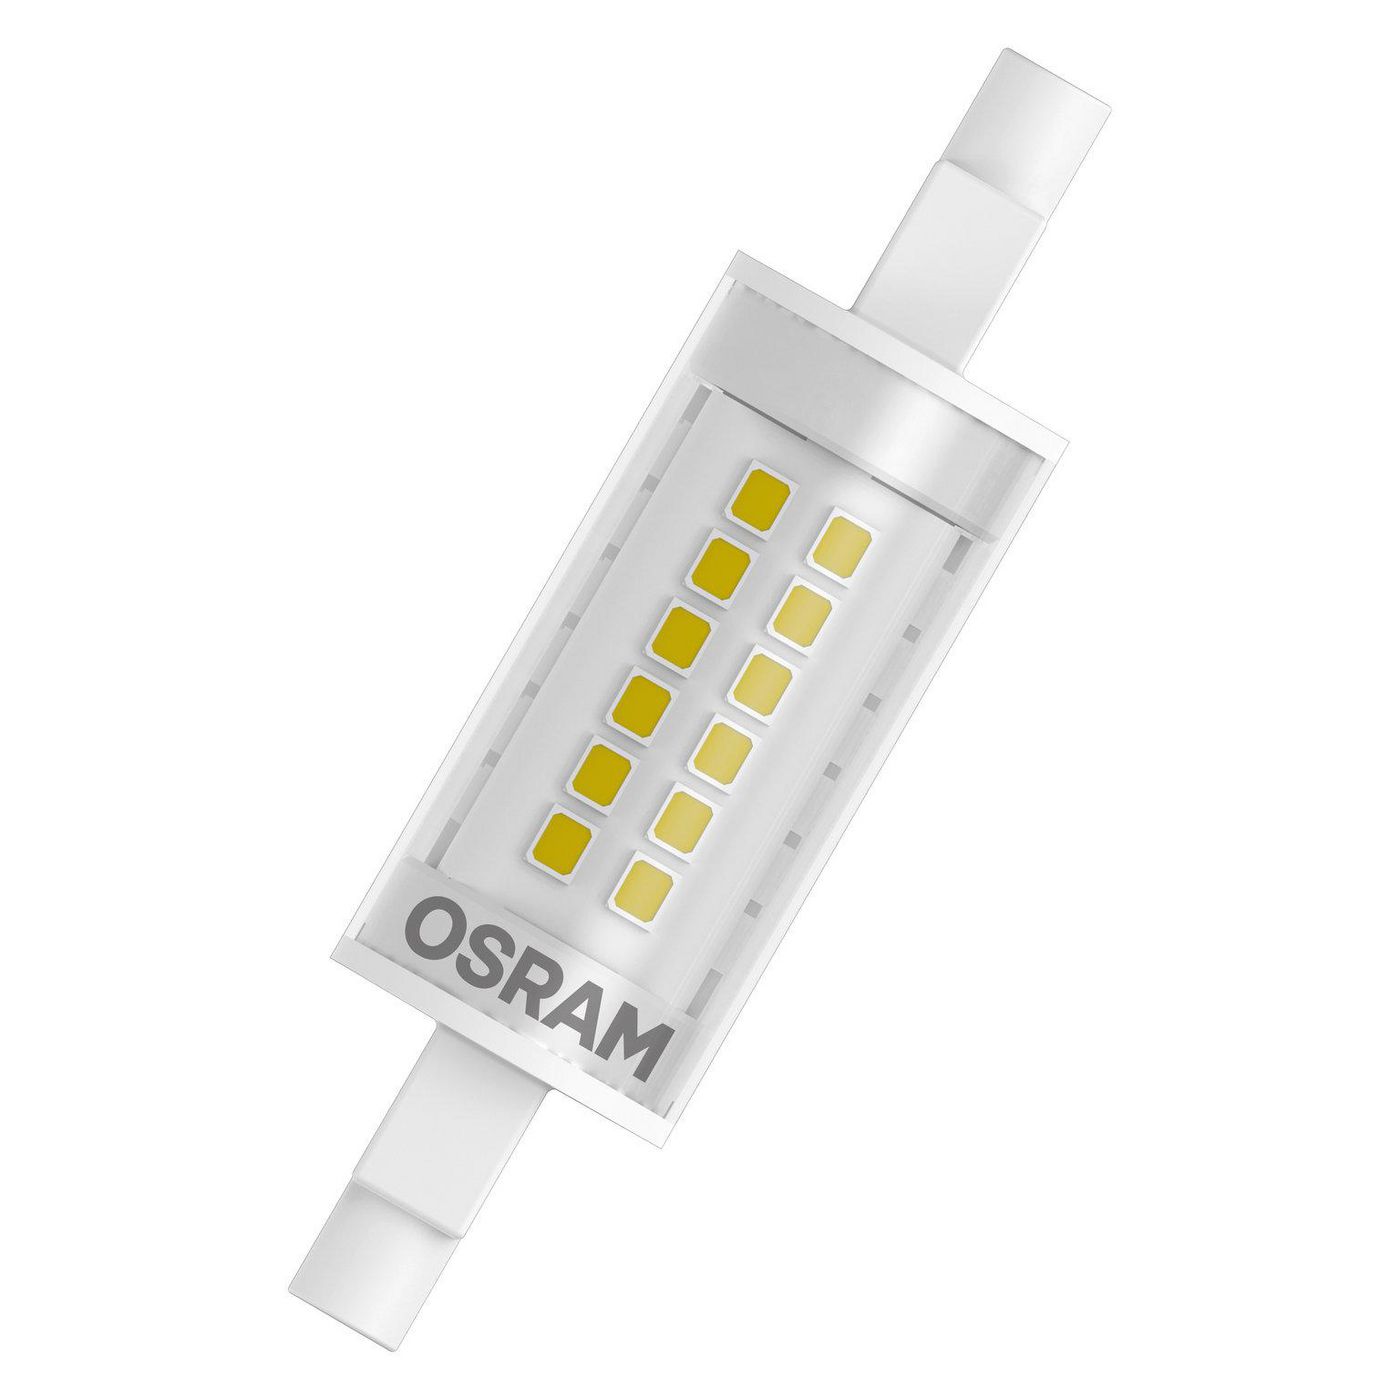 OSRAM LED EEK A++ (A++ - E) R7s Kolbenform 6 W = 60 W Warmweiß (Ø x L) 20 mm x 78 mm 1 St.